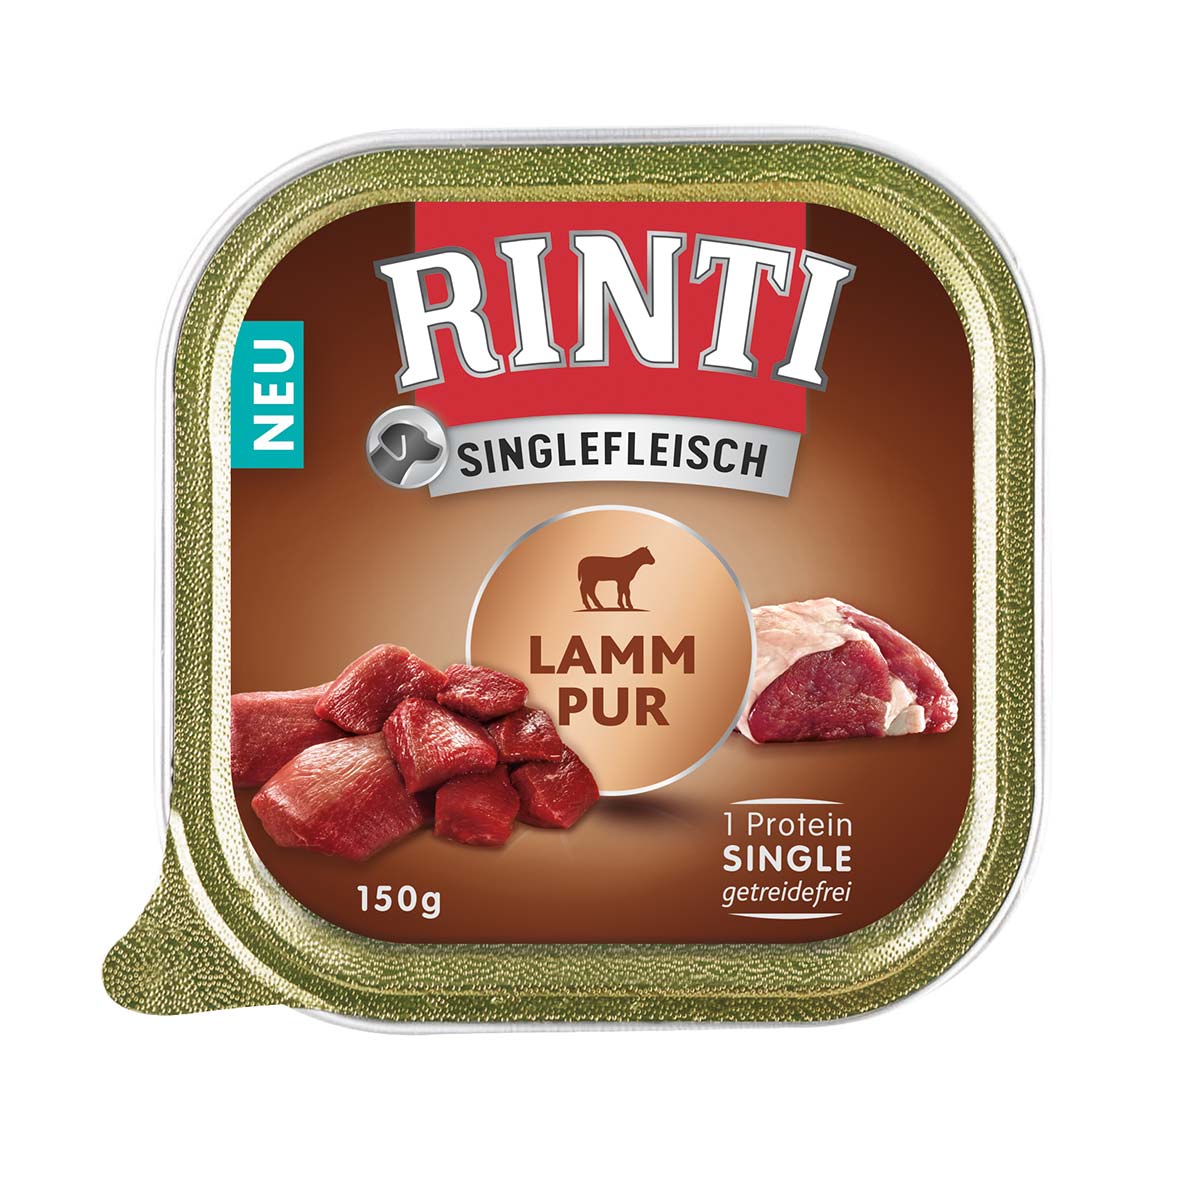 RINTI Singlefleisch Lamm Pur